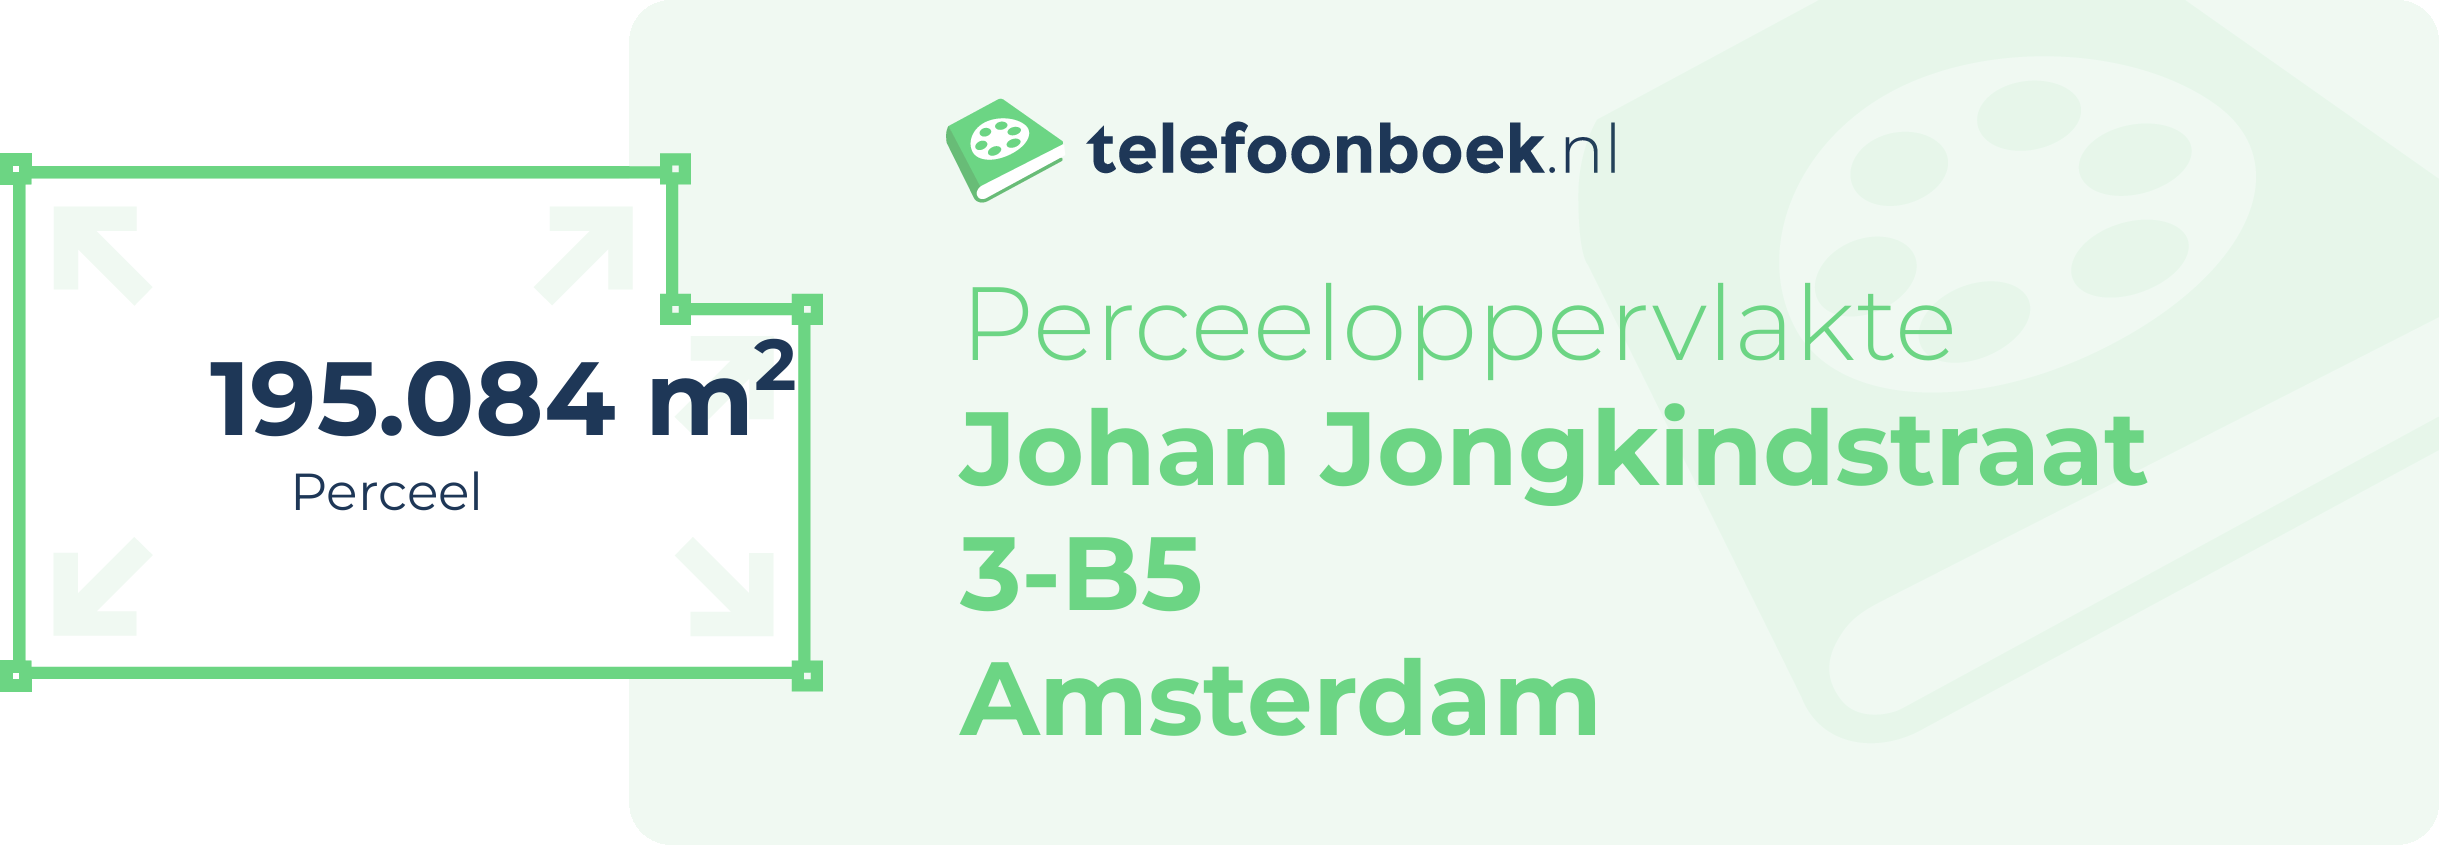 Perceeloppervlakte Johan Jongkindstraat 3-B5 Amsterdam